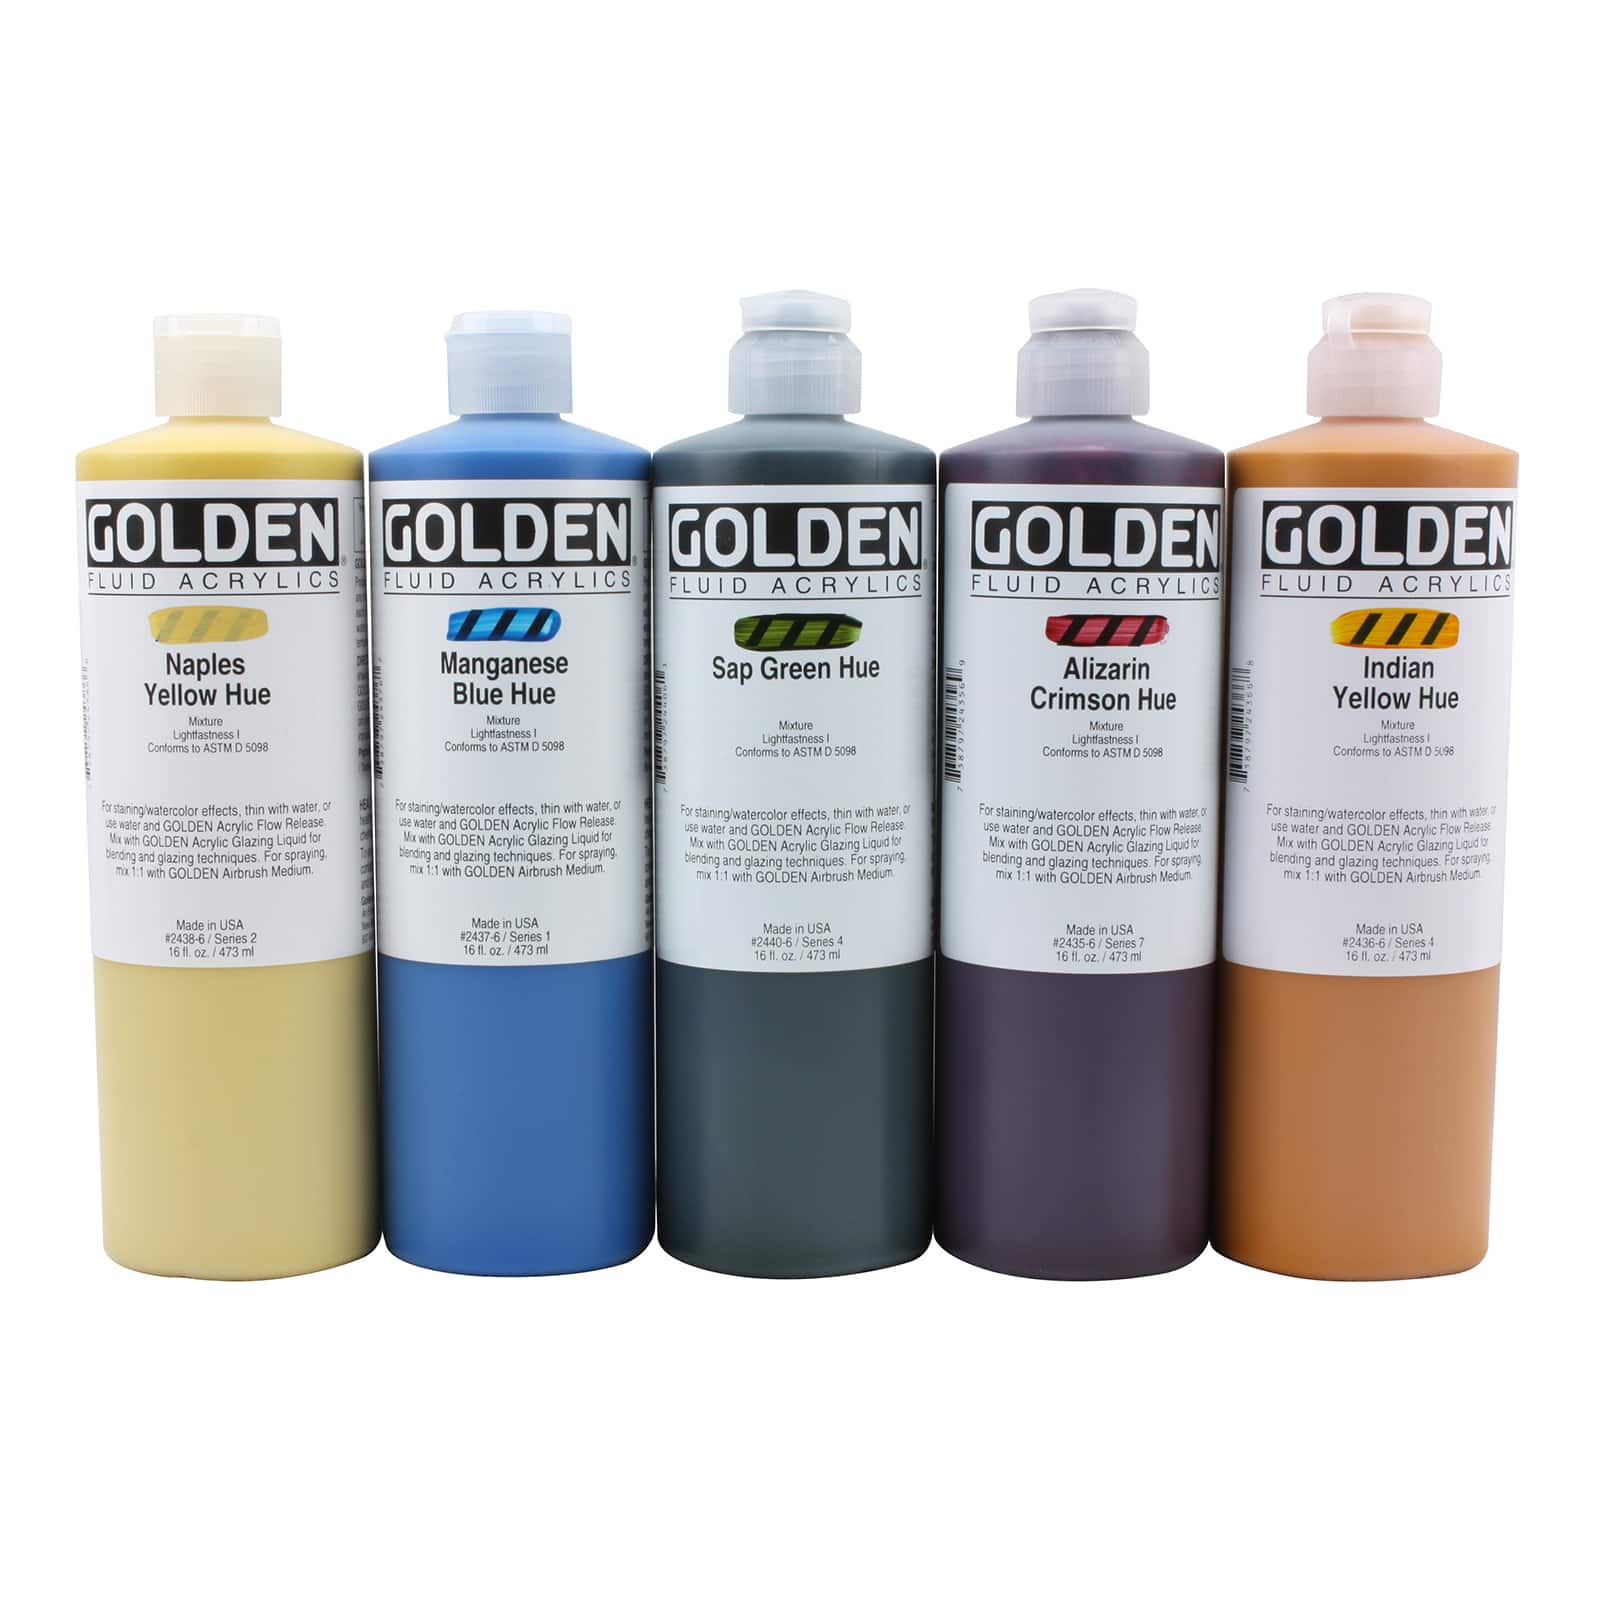 Golden Airbrush Medium - 16 oz Bottle